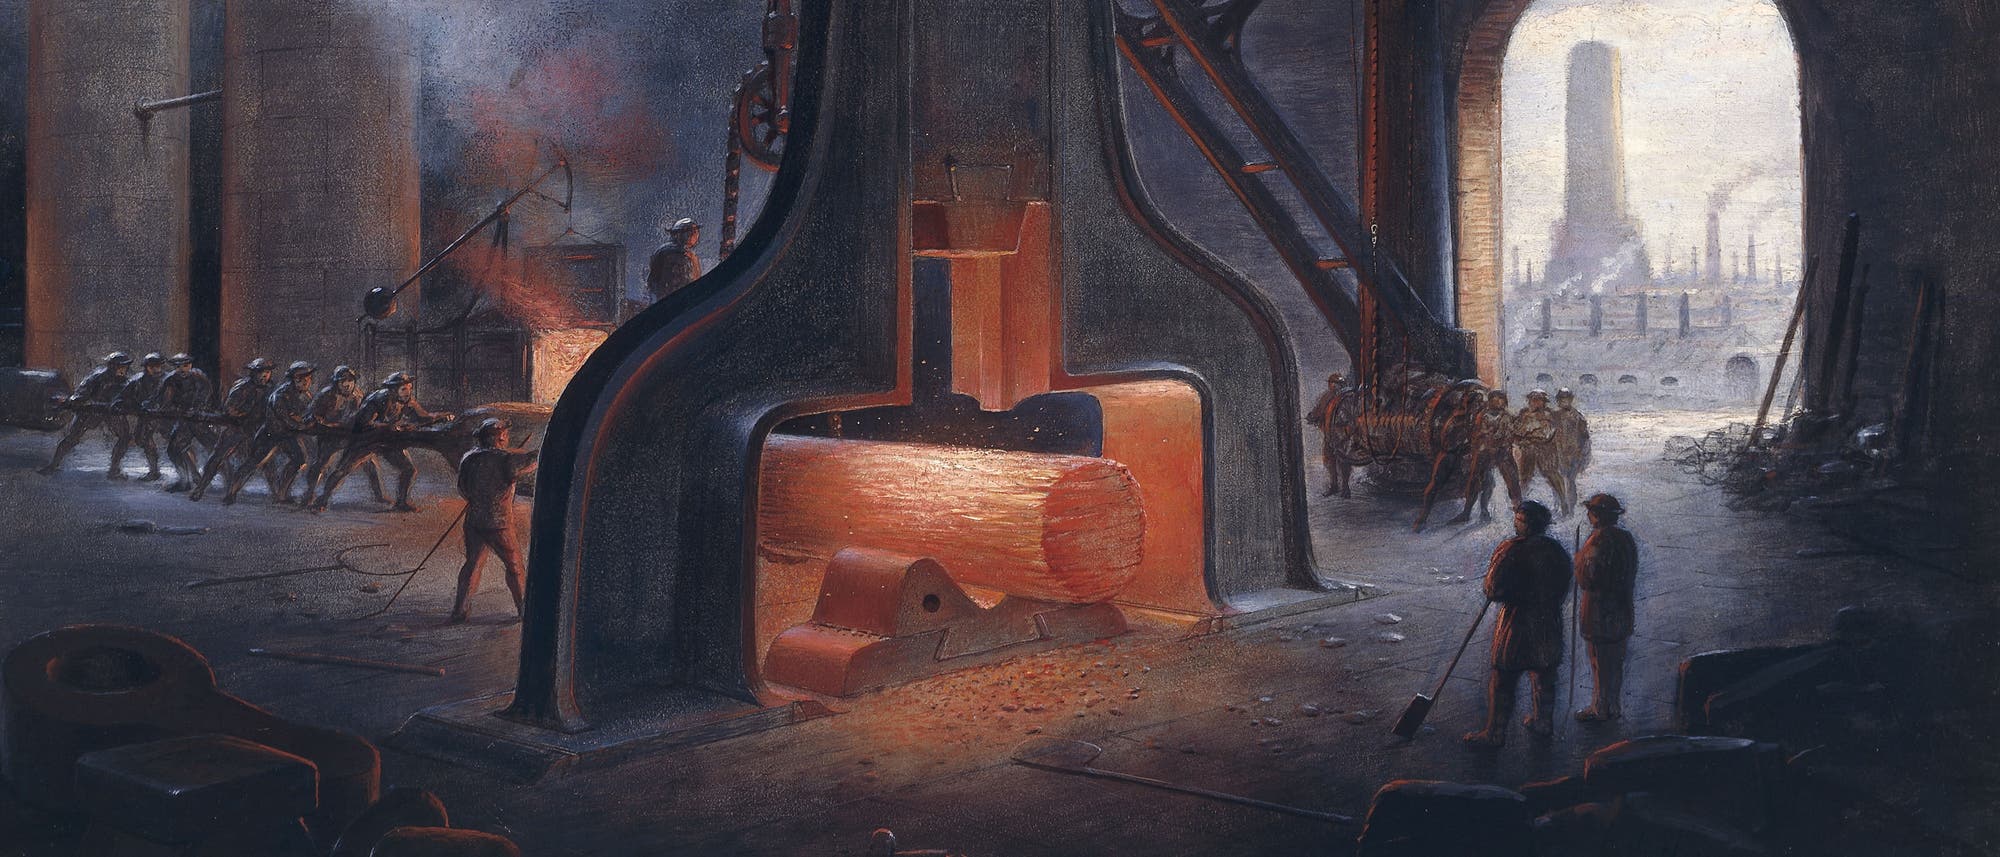 Bild einer Stahlfabrik, in der Männer mit einem großen dampfbetriebenen Schmiedehammer einen Stahlblock bearbeiten.